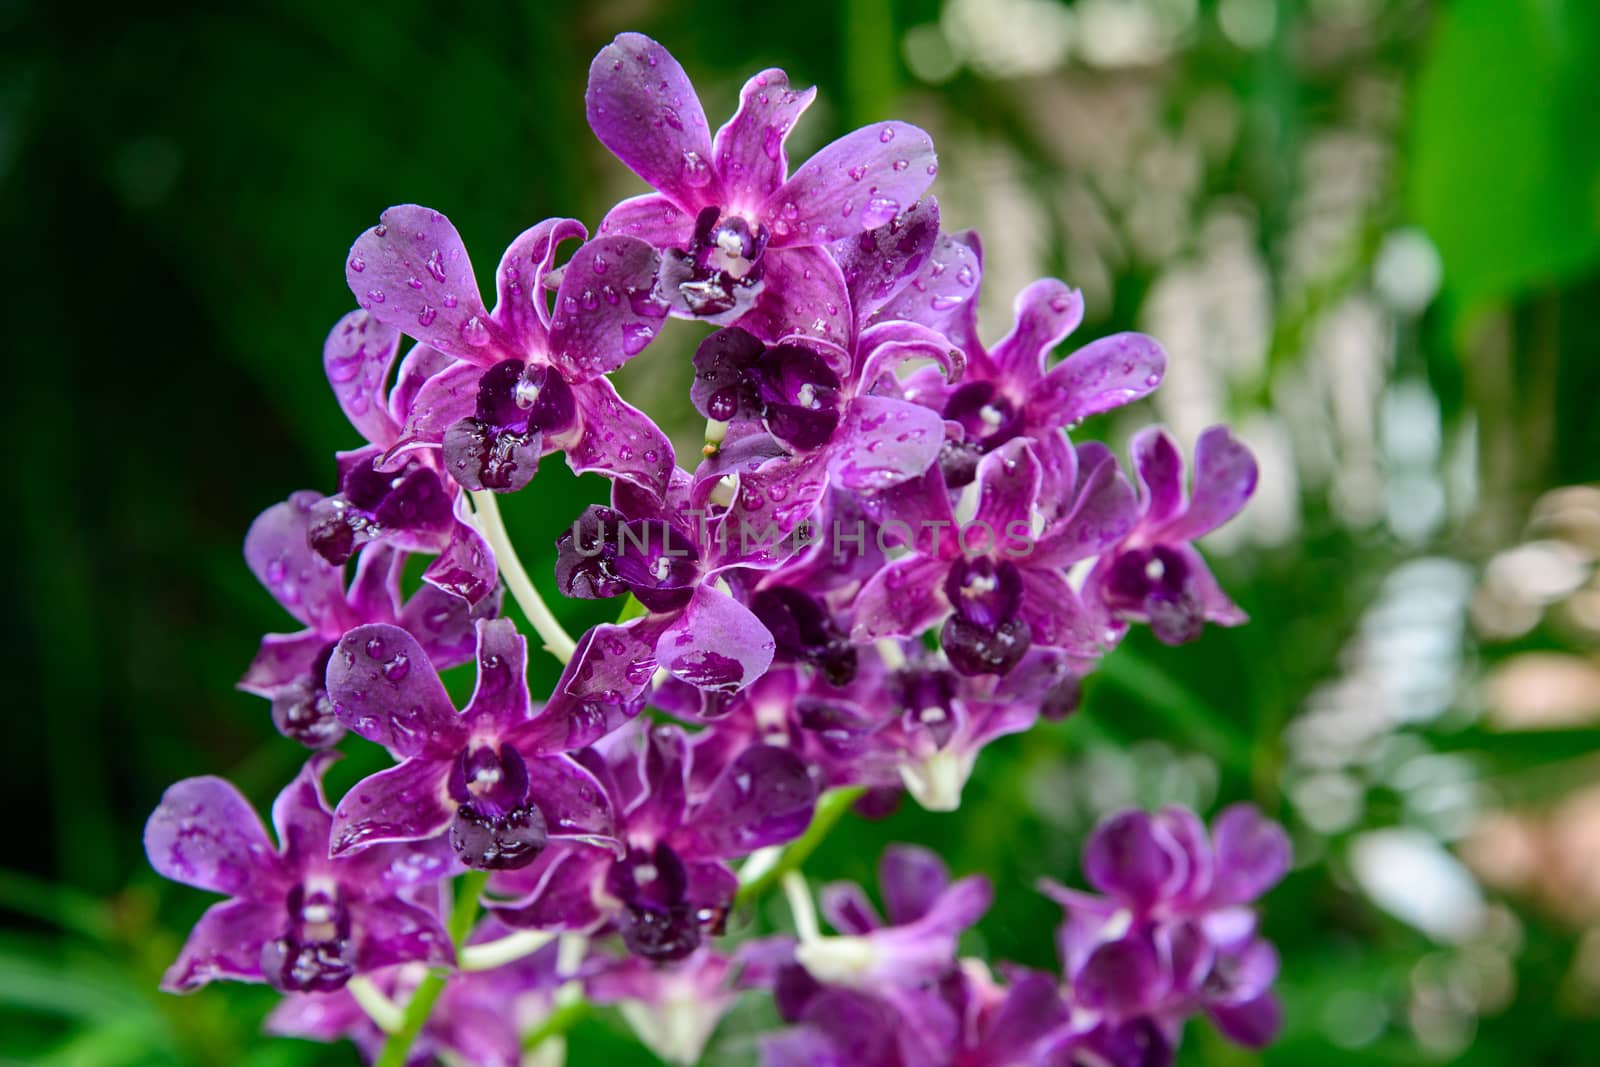 Rhynchostylis gigantea var purple orchids , Genus is Rhynchostylis